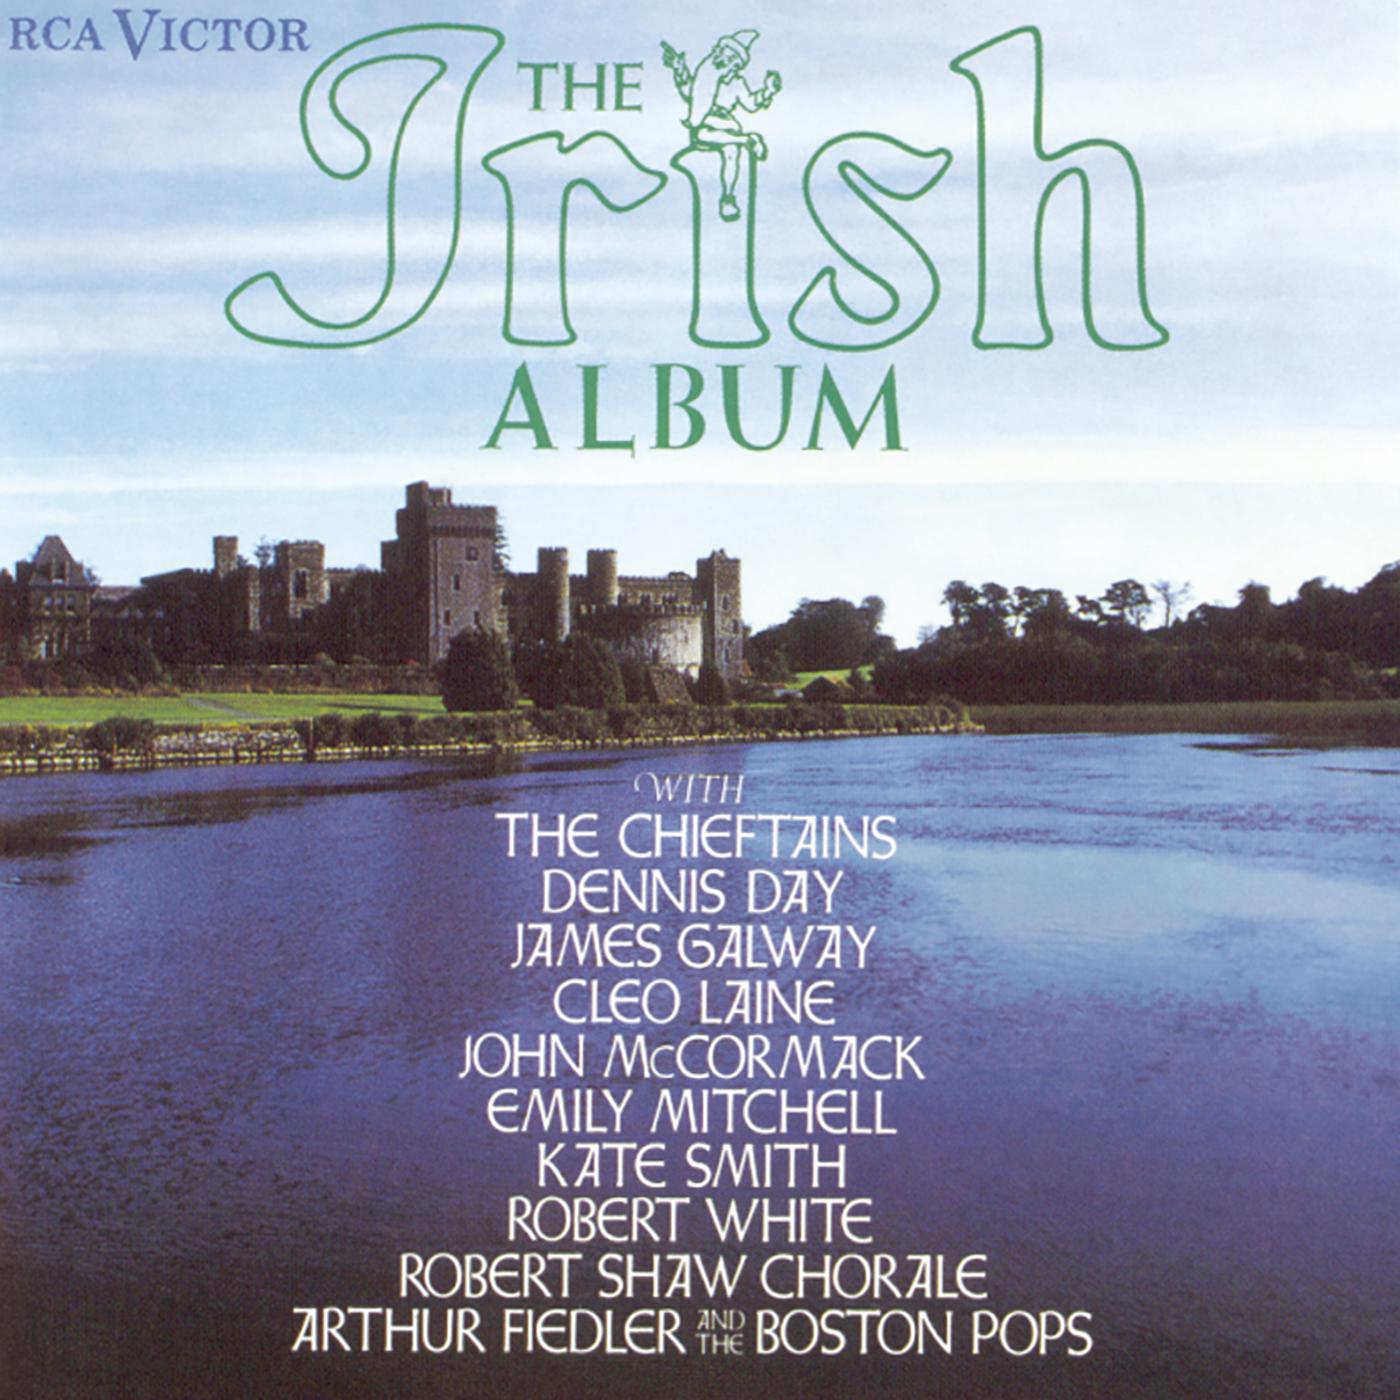 The Irish Album